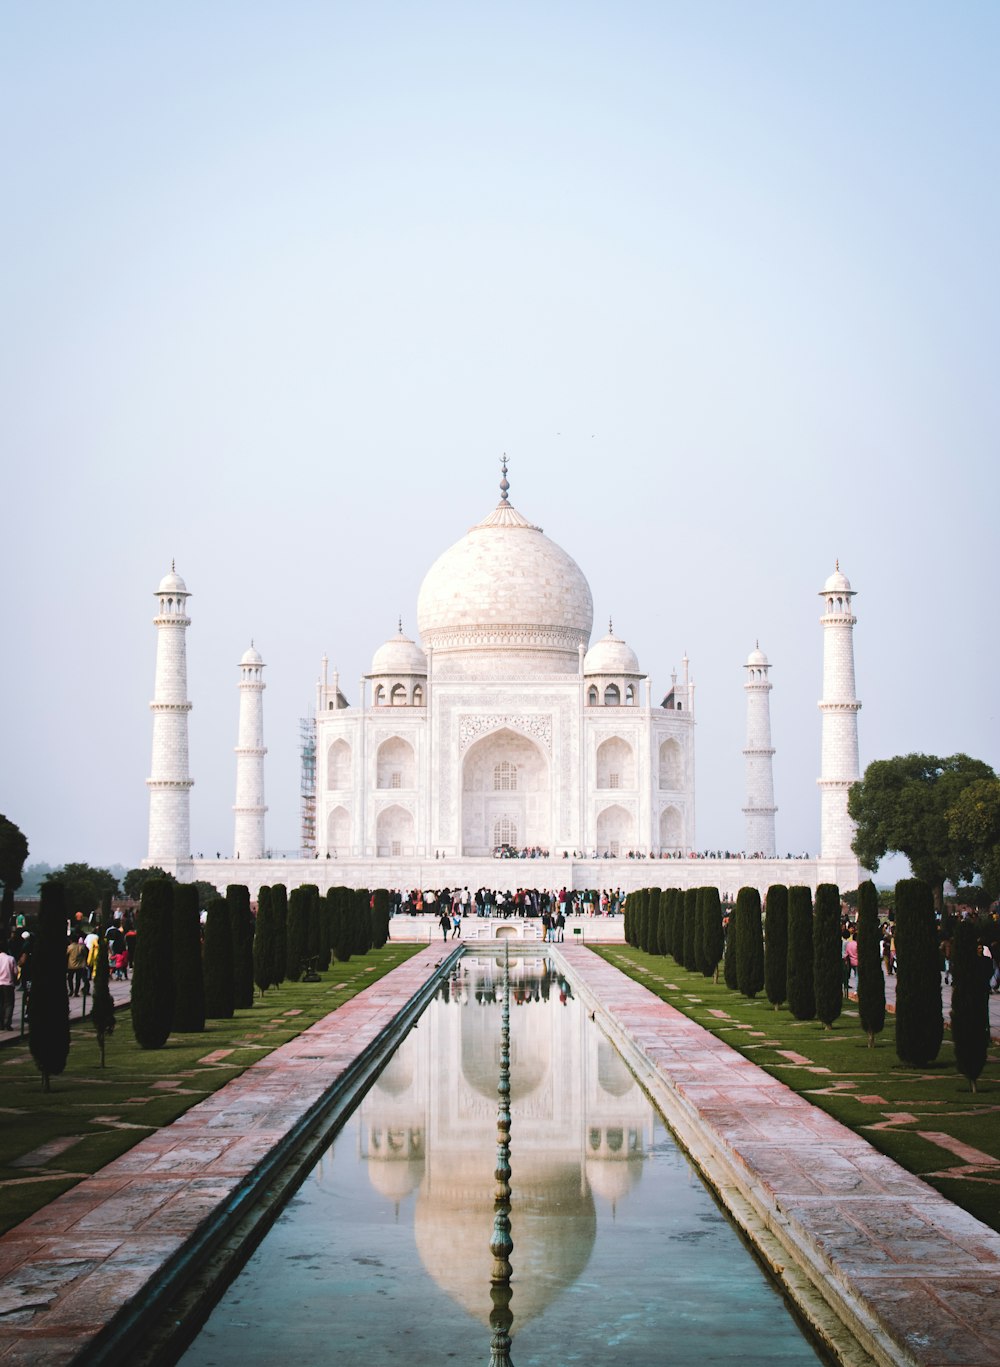 people at Taj Mahal, India photo – Free Taj mahal Image on Unsplash